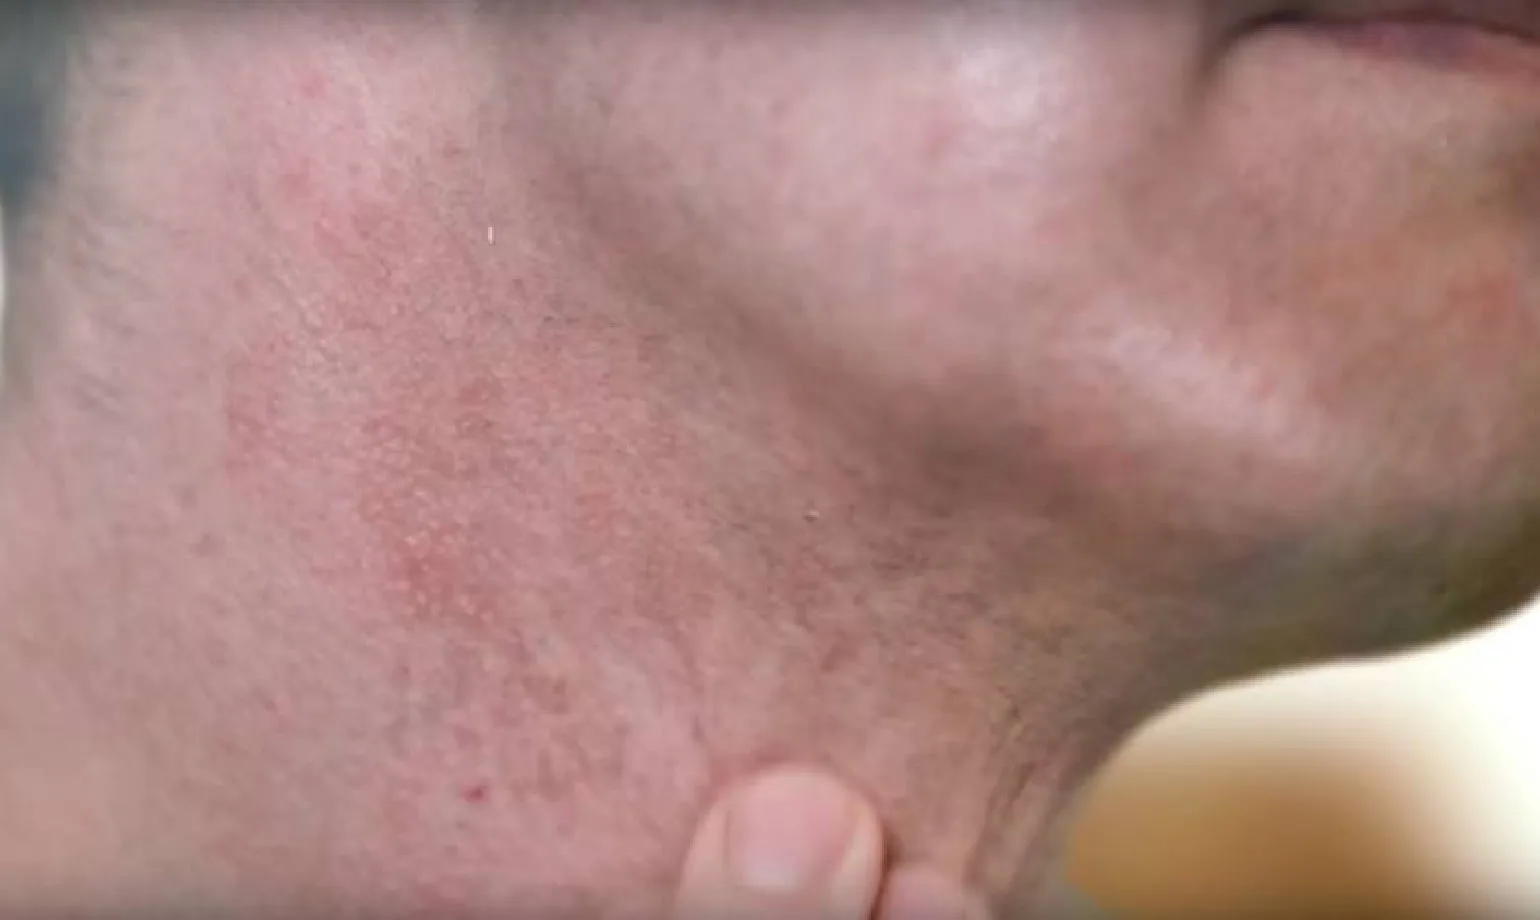 Rasieren verursacht Hautirritationen und Unbehagen